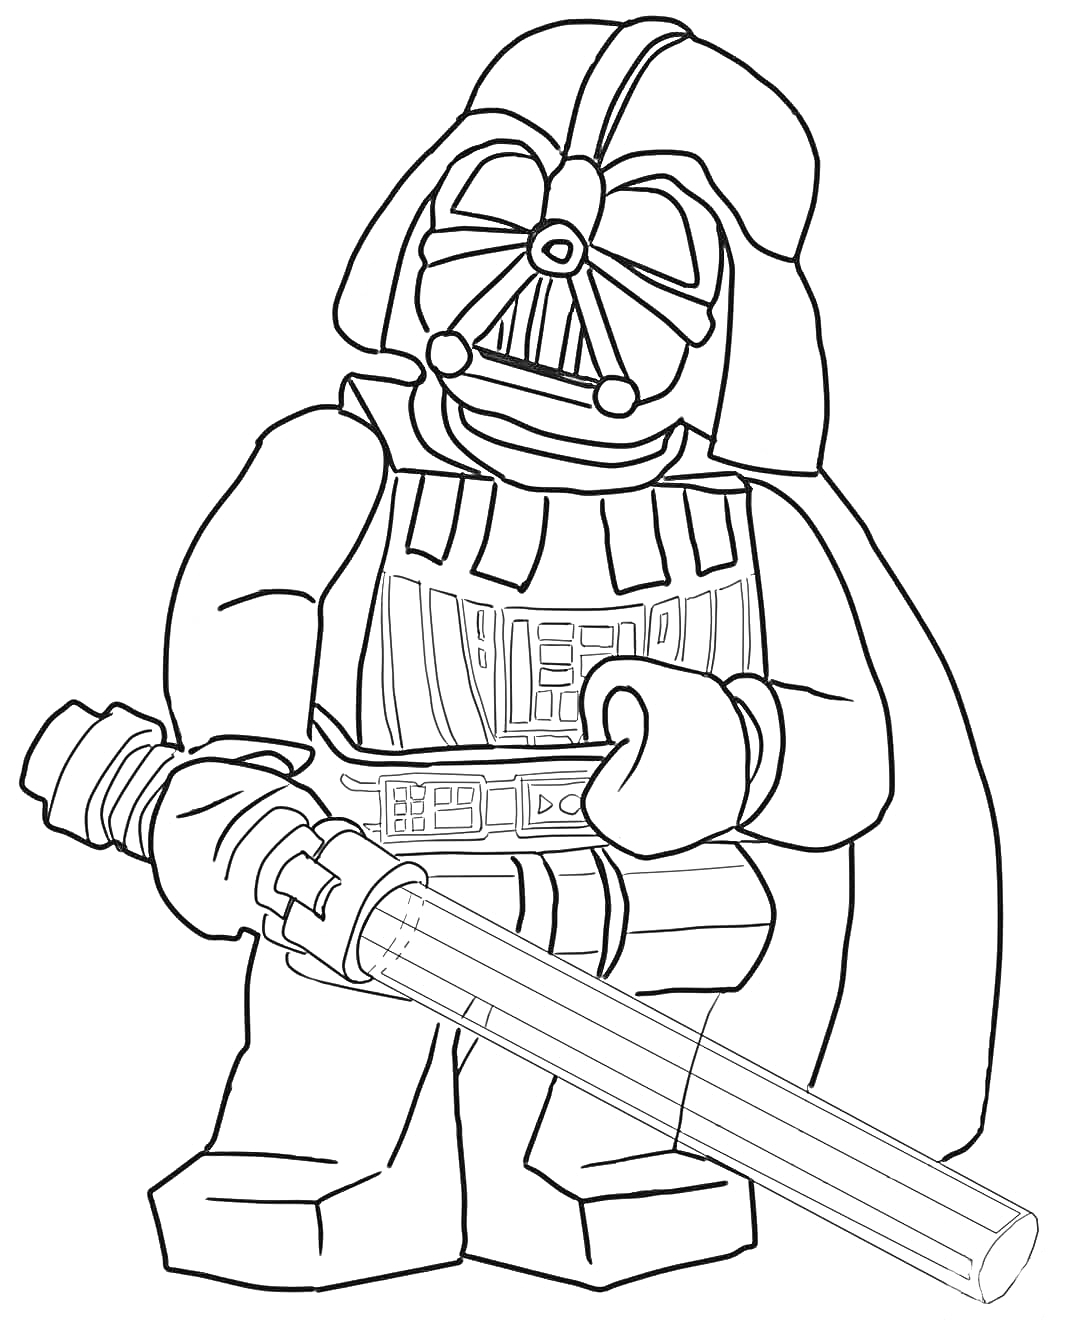 Лего фигурка Дарта Вейдера с лазерным мечом